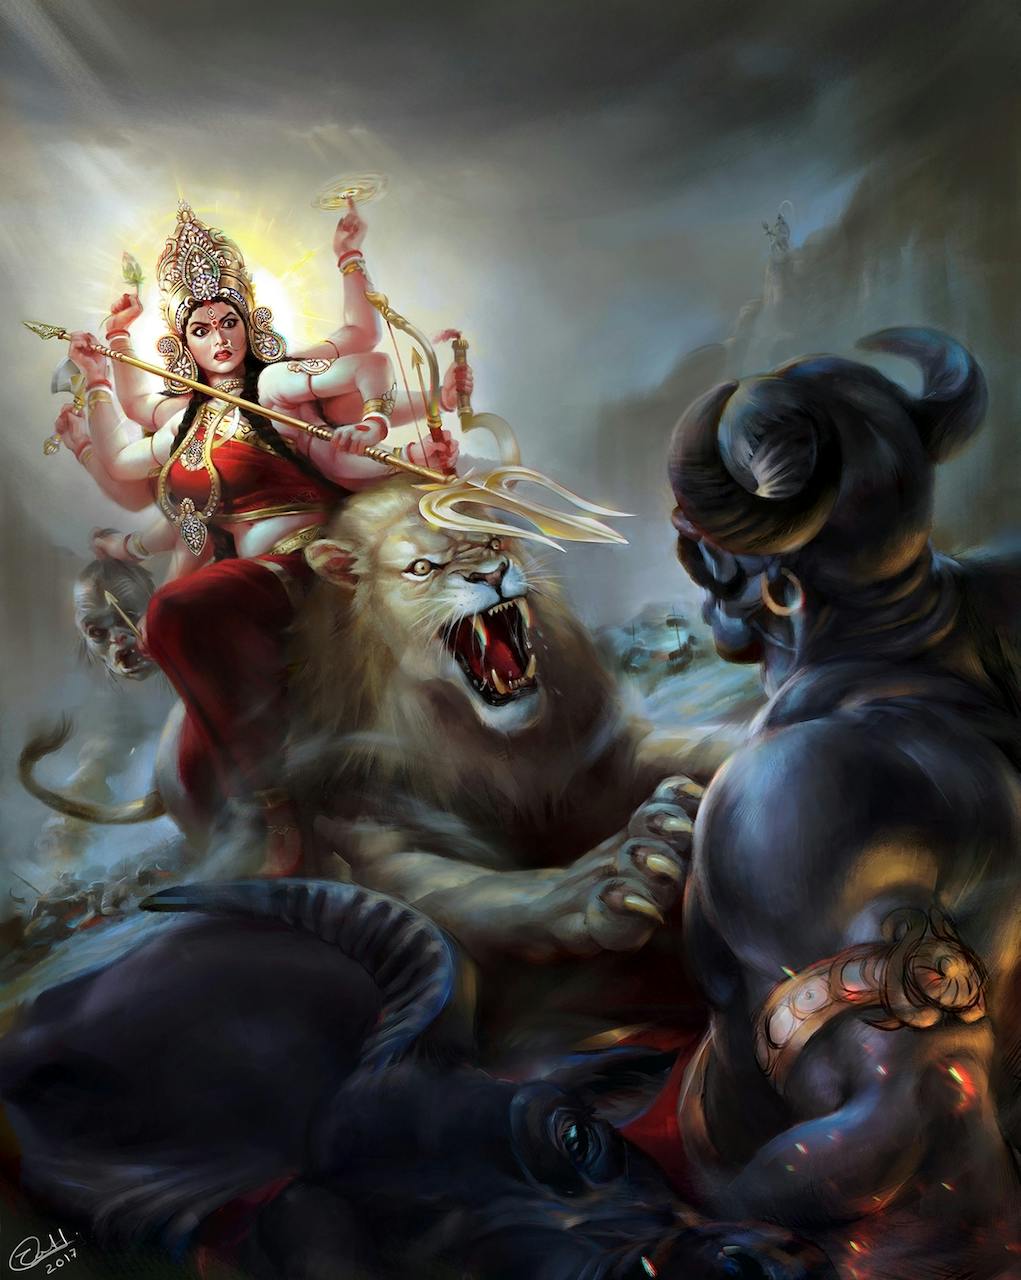 A goddess attacking a demon